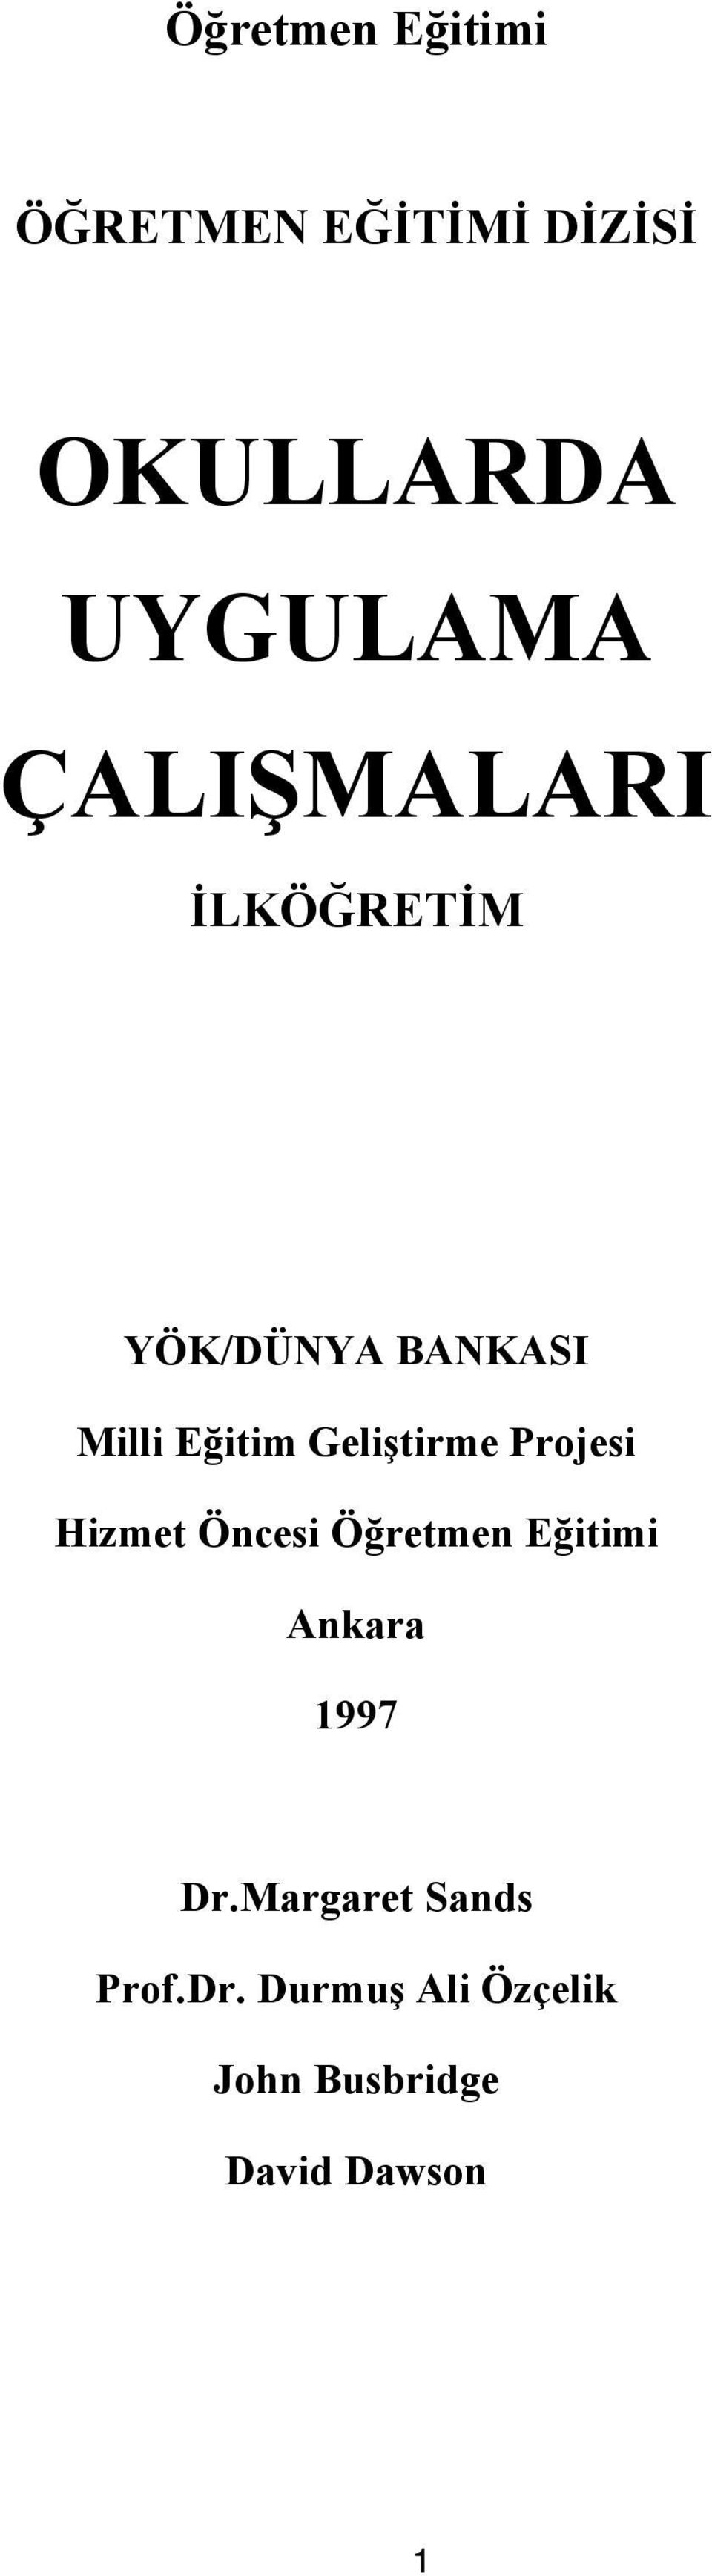 Geliştirme Projesi Hizmet Öncesi Öğretmen Eğitimi Ankara 1997